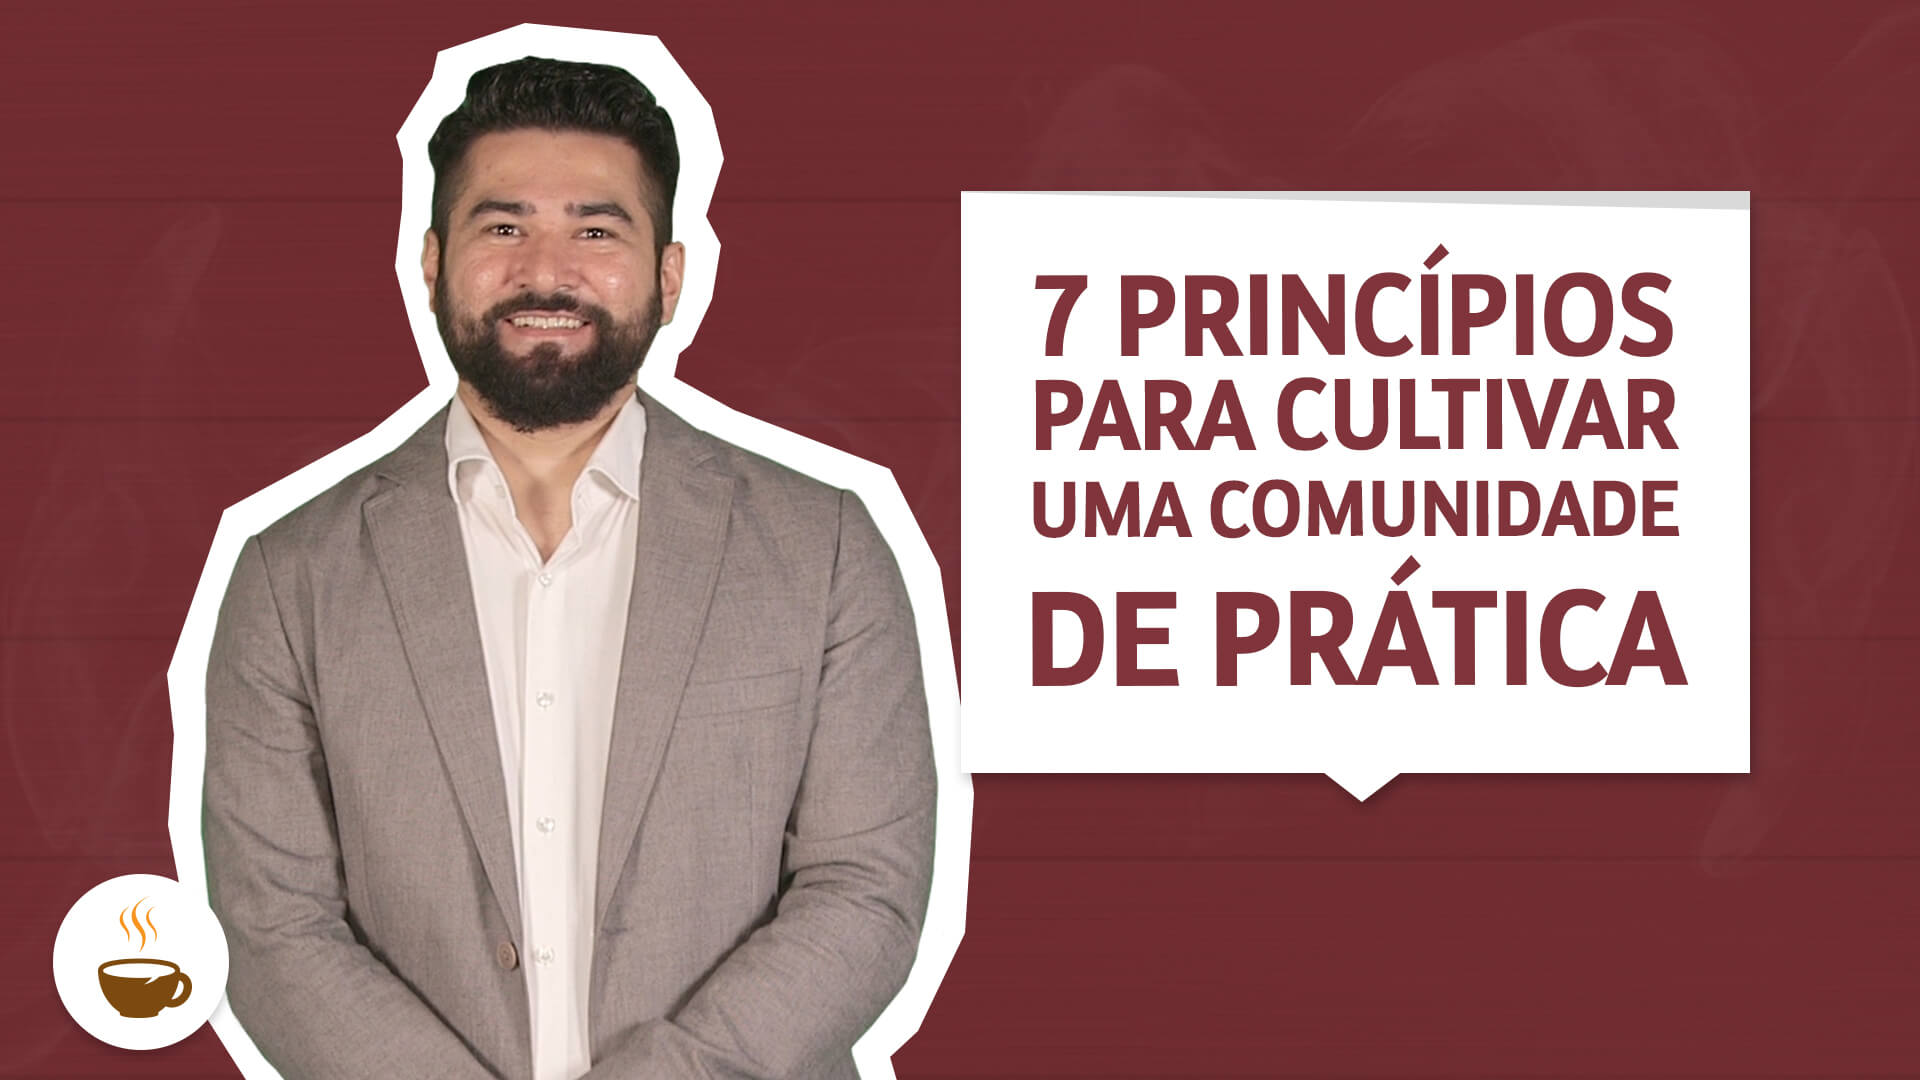 Prof. Wagner Cassimiro dá aula sobre os 7 Princípios para cultivar uma comunidade de prática